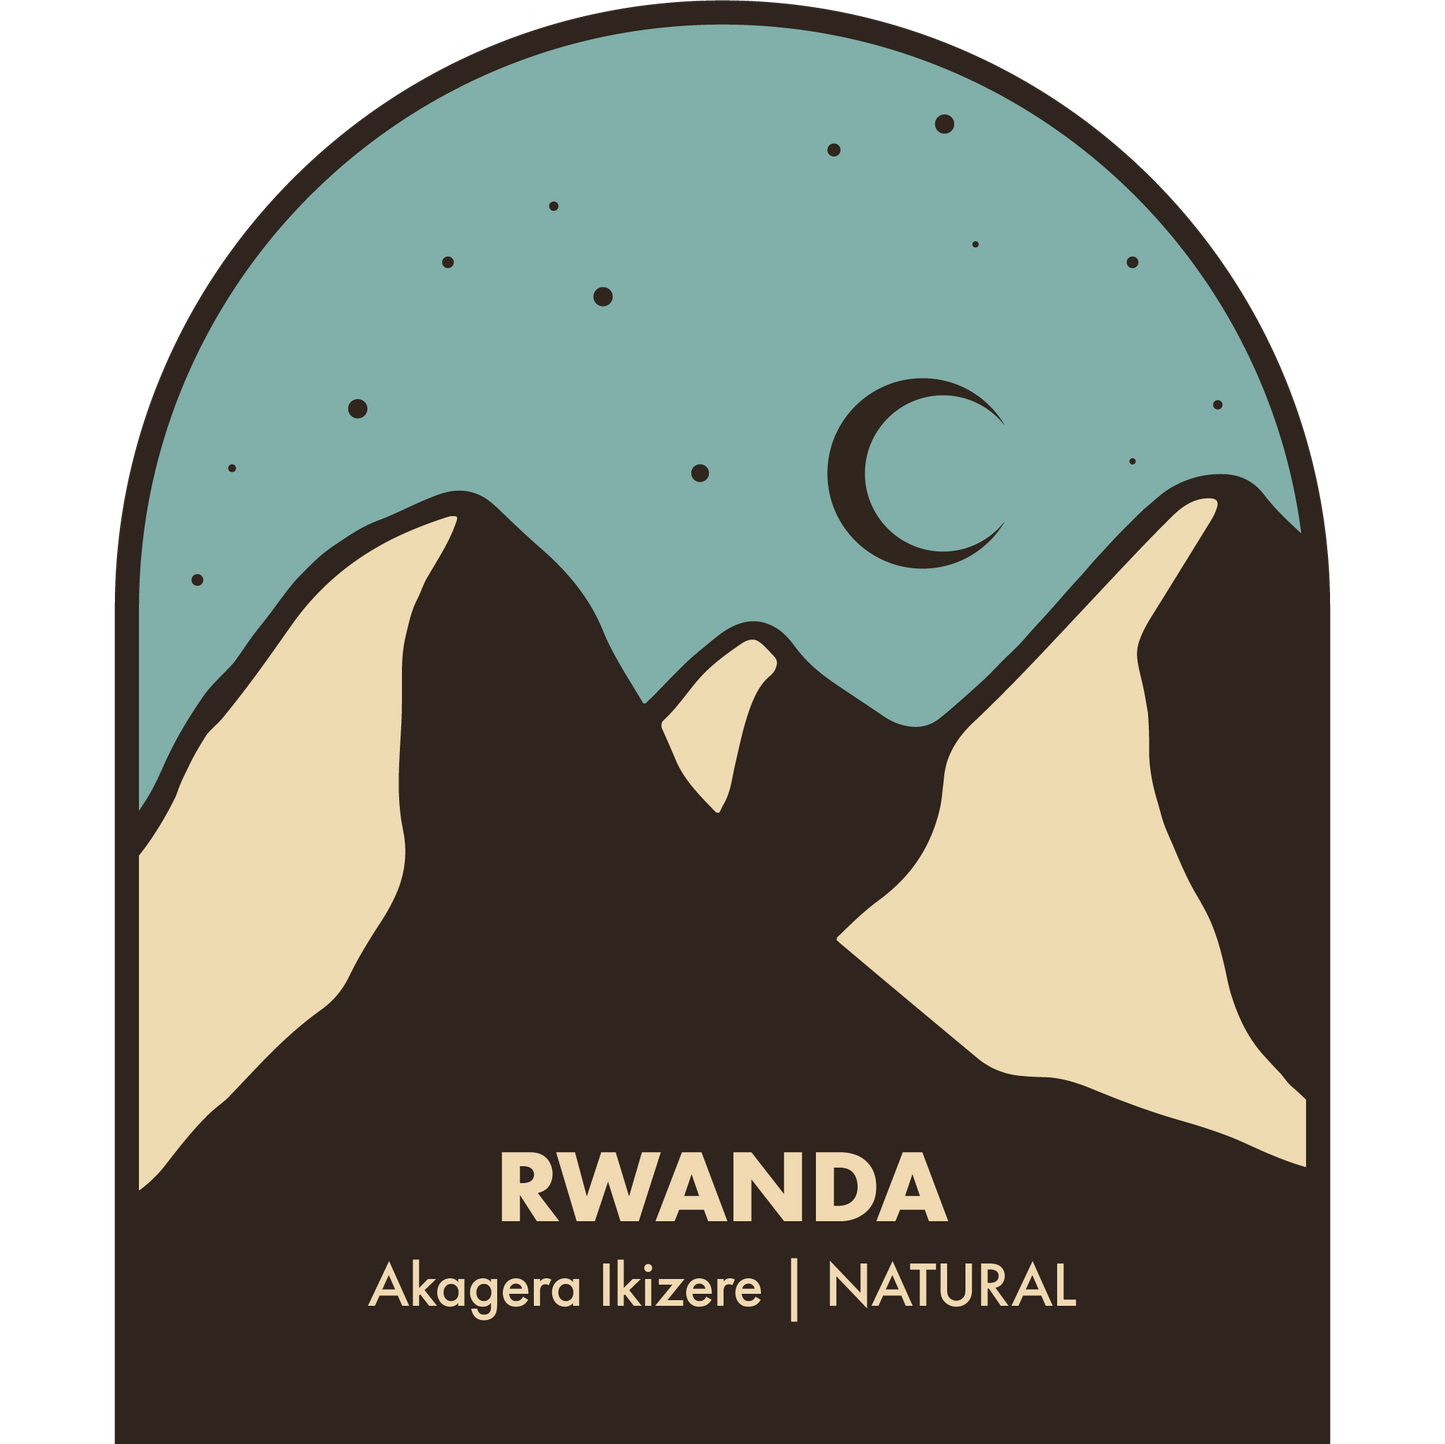 Rwanda, Akagera Ikizere Natural